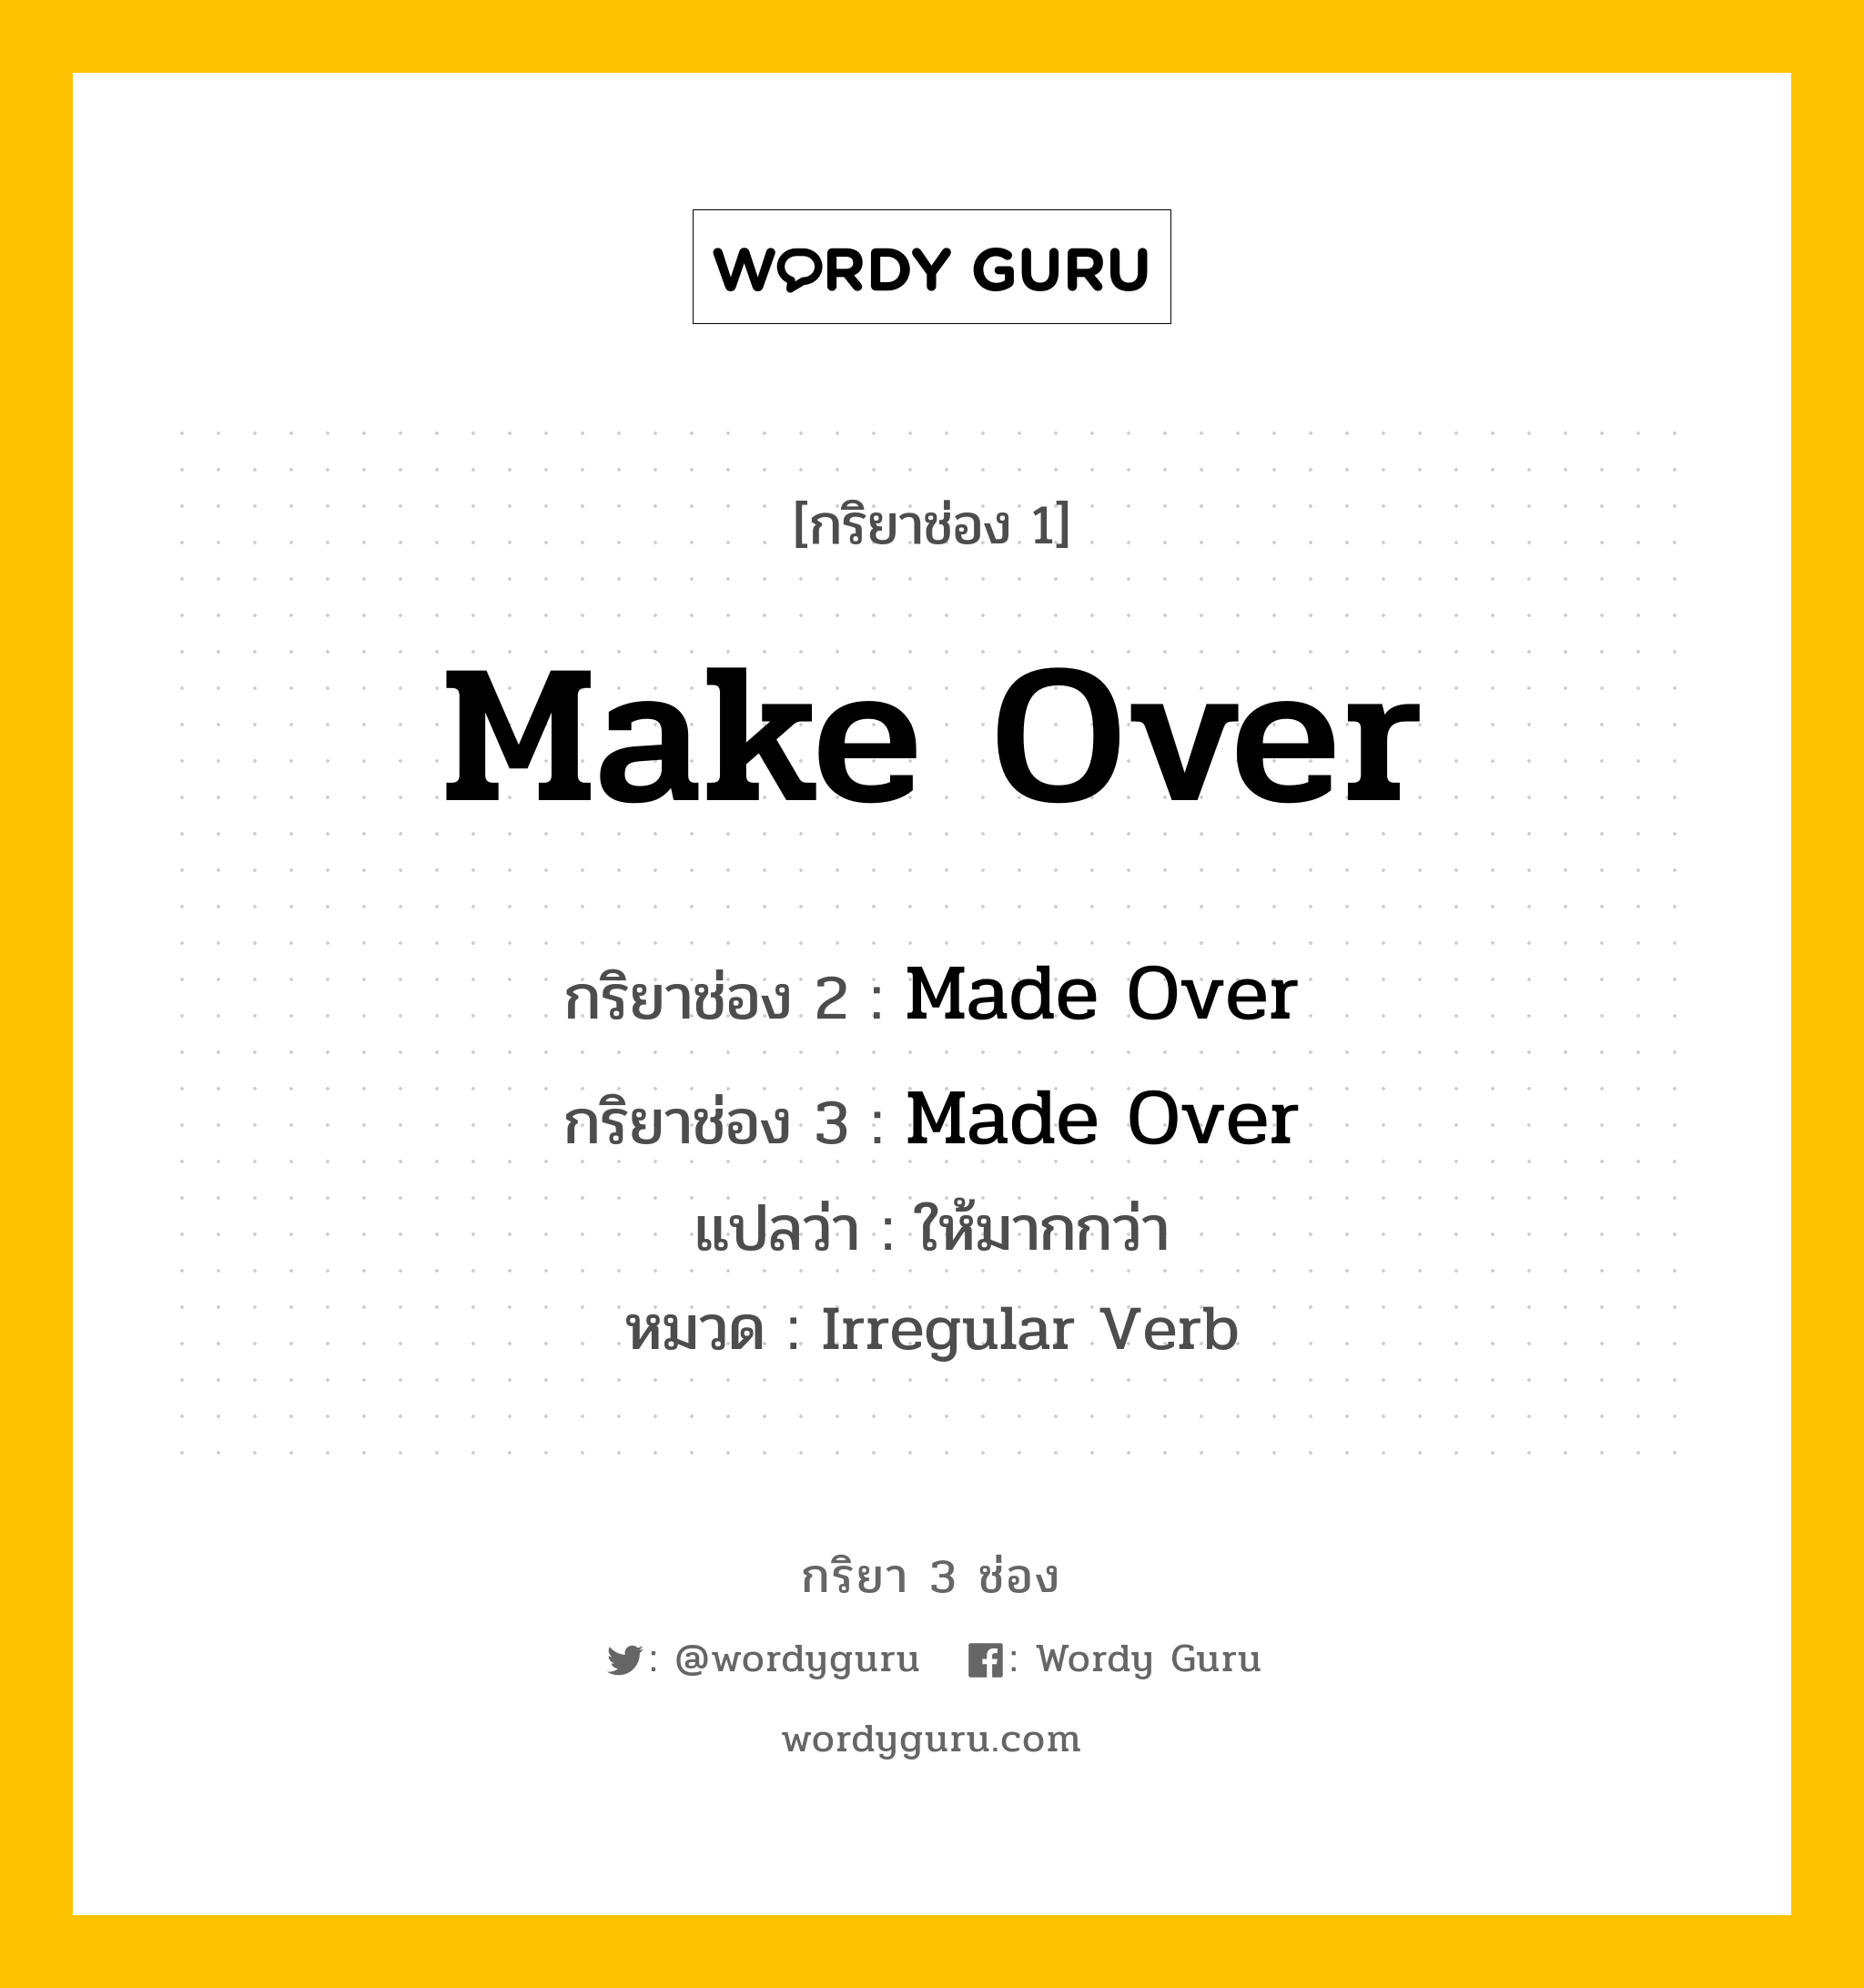 กริยา 3 ช่อง ของ Make Over คืออะไร?, กริยาช่อง 1 Make Over กริยาช่อง 2 Made Over กริยาช่อง 3 Made Over แปลว่า ให้มากกว่า หมวด Irregular Verb หมวด Irregular Verb